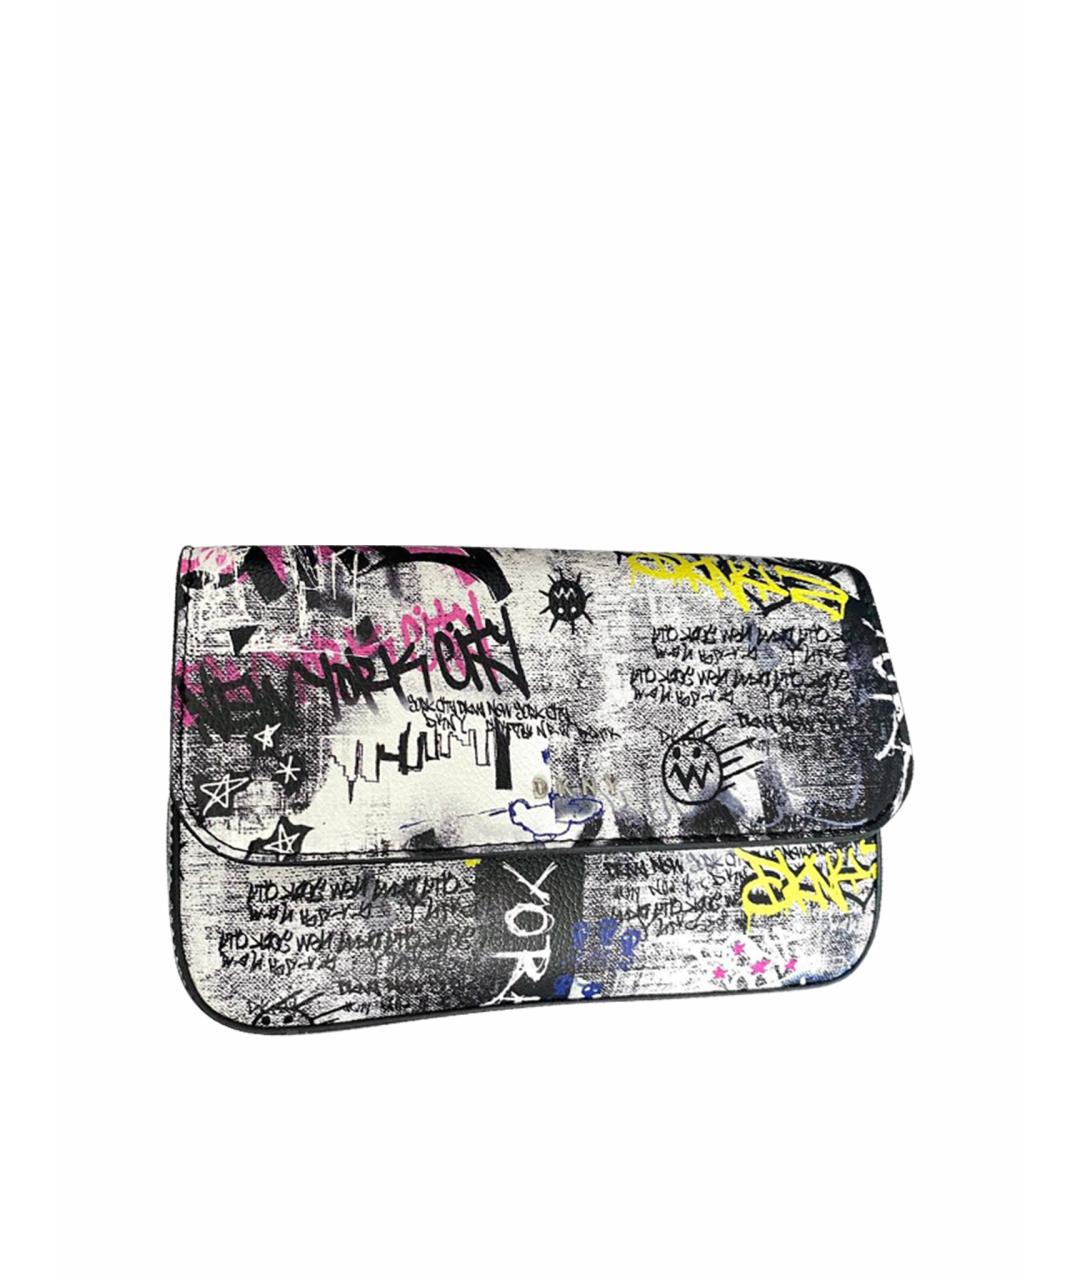 DKNY Мульти сумка через плечо из искусственной кожи, фото 1